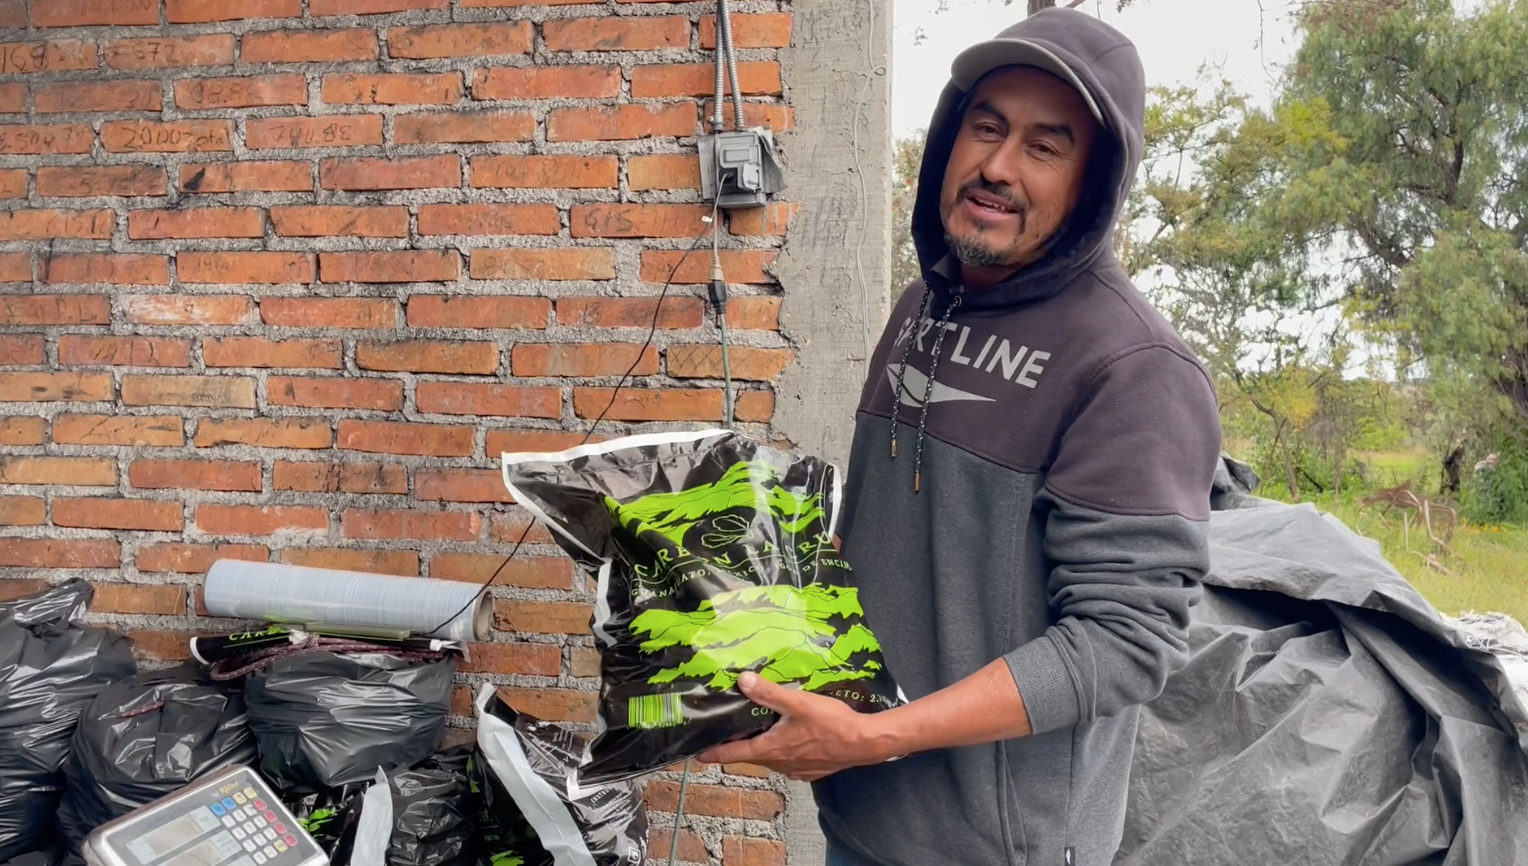 Pie de foto: El carbón vegetal es comercializado en Guanajuato. Crédito de foto: Evlyn.Onine